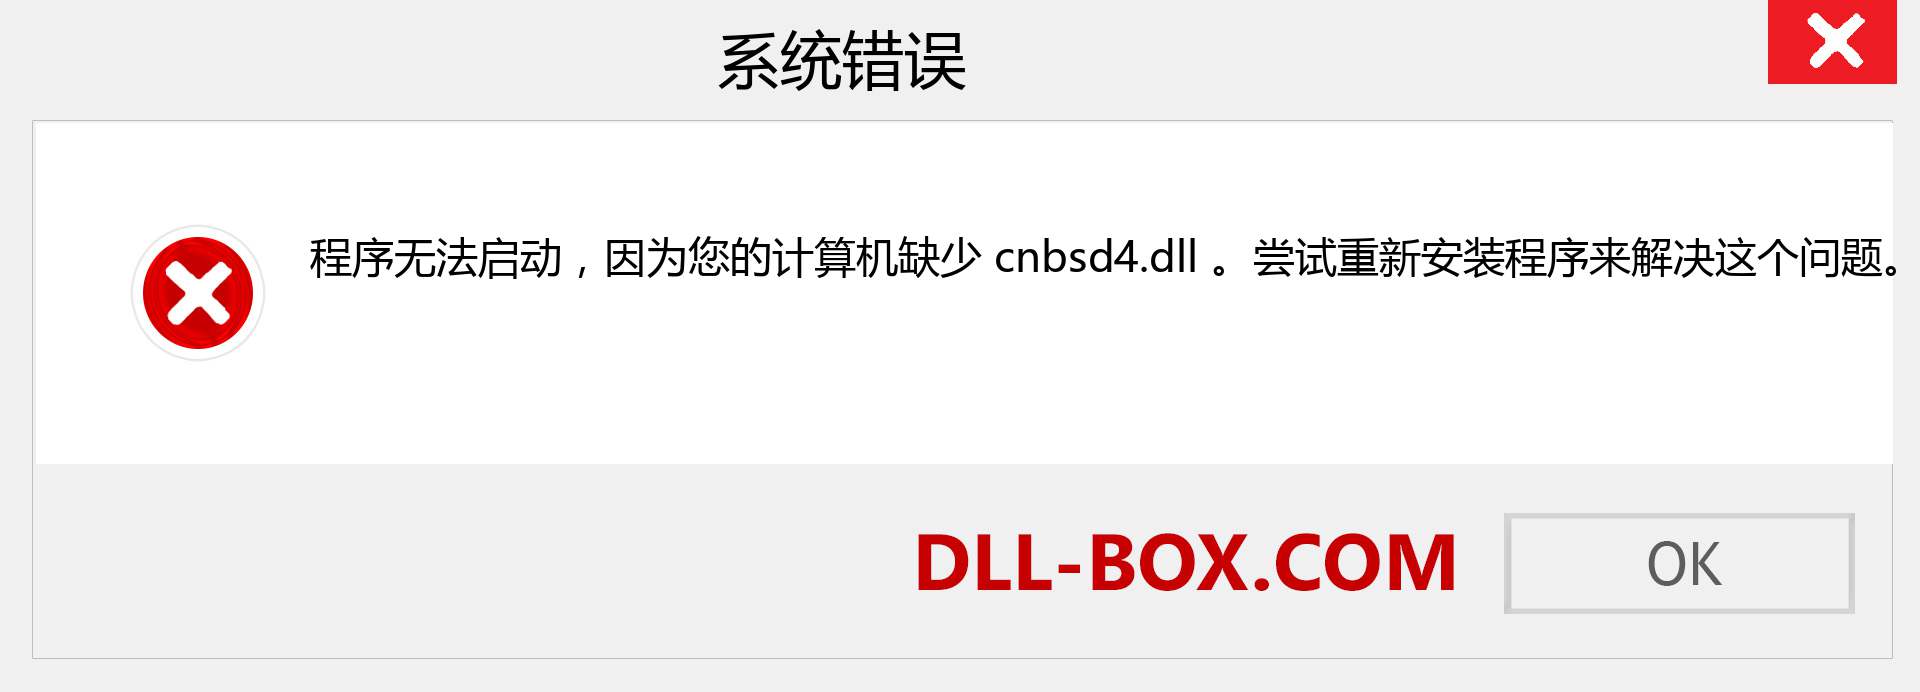 cnbsd4.dll 文件丢失？。 适用于 Windows 7、8、10 的下载 - 修复 Windows、照片、图像上的 cnbsd4 dll 丢失错误